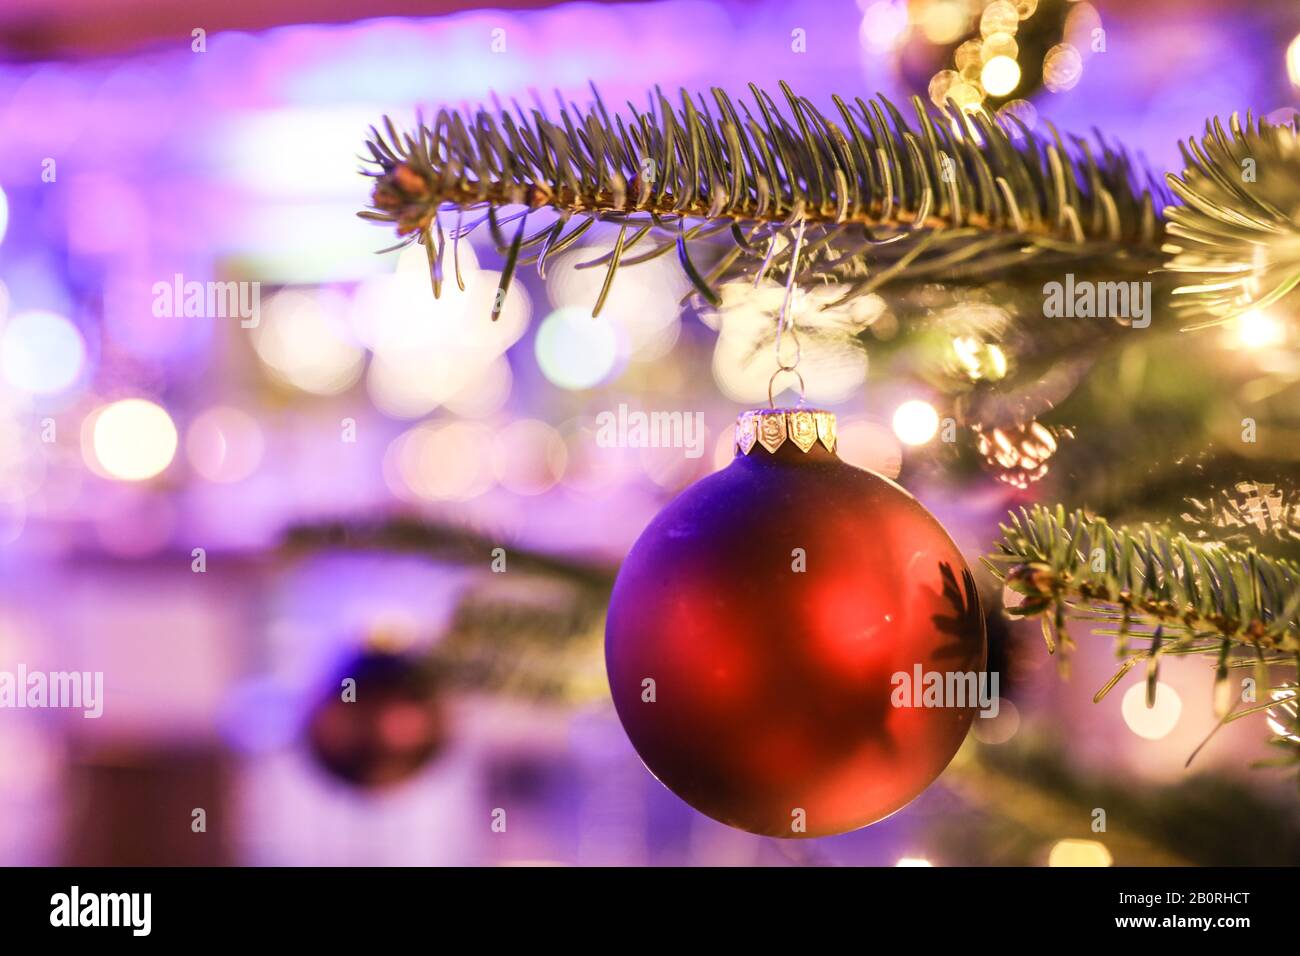 Weihnachtsbaumschmuck, Weihnachtsbaumball, auf einem Weihnachtsbaum bei einer Weihnachtsfeier, Köln, Nordrhein-Westfalen, Deutschland Stockfoto